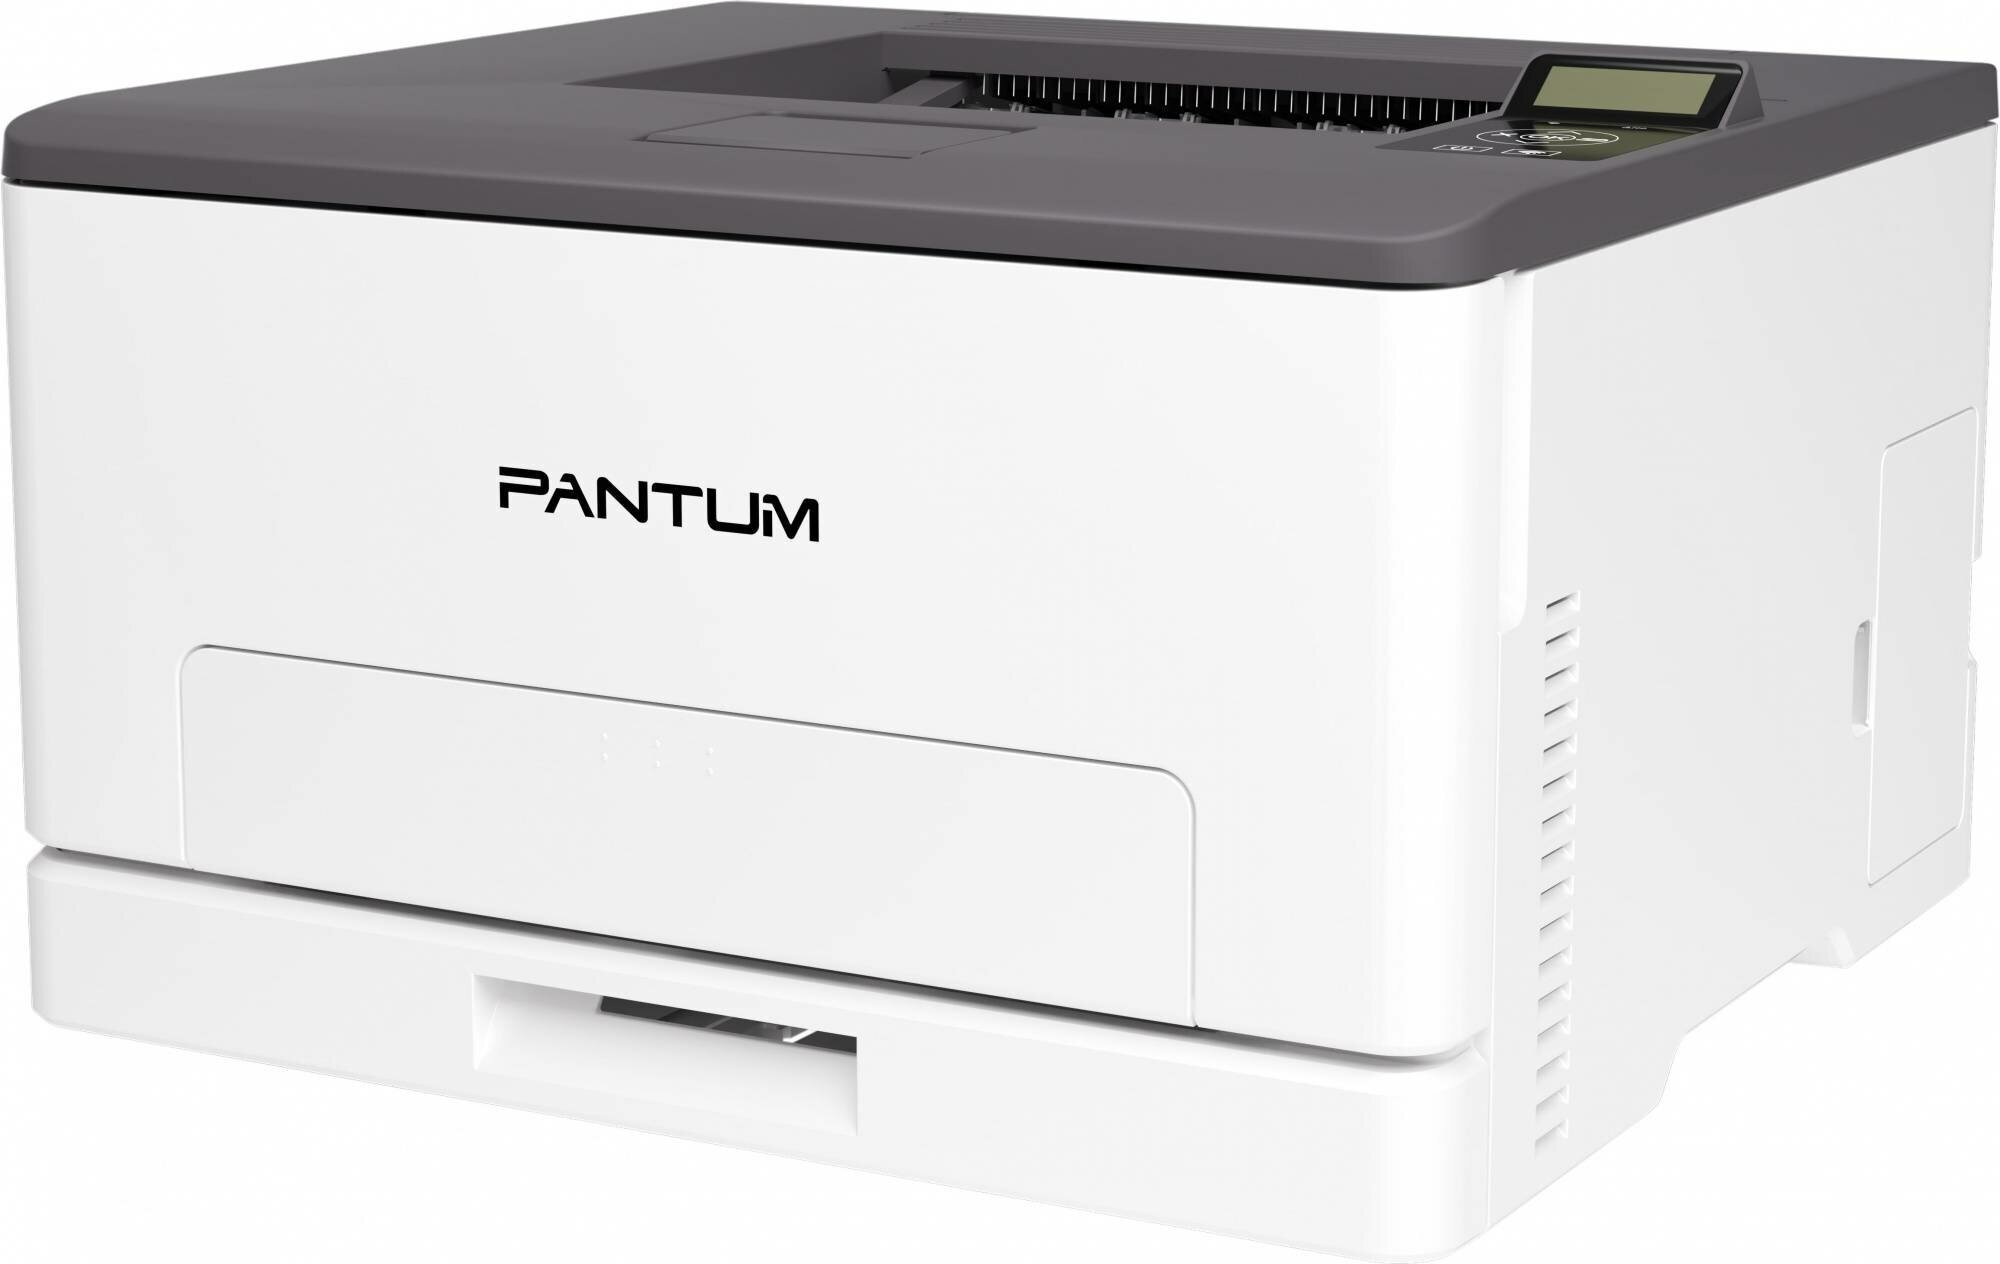 Принтер Лазерный Pantum CP1100DW